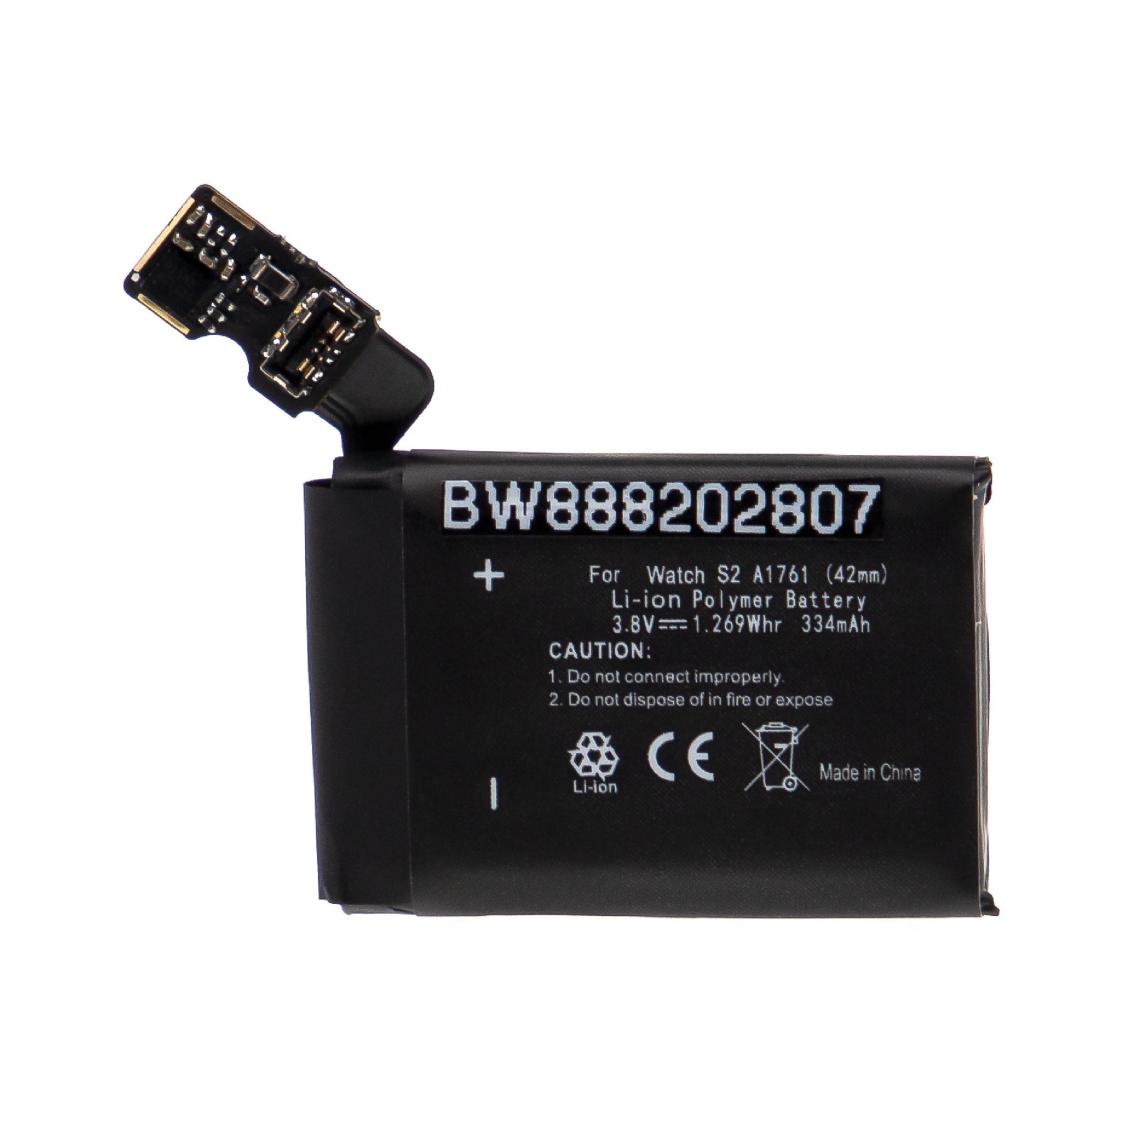 Vhbw - vhbw Batterie remplacement pour Apple A1761 pour smartwatch montre connectée bracelet fitness (334mAh, 3,8V, Li-polymère) - Accessoires montres connectées